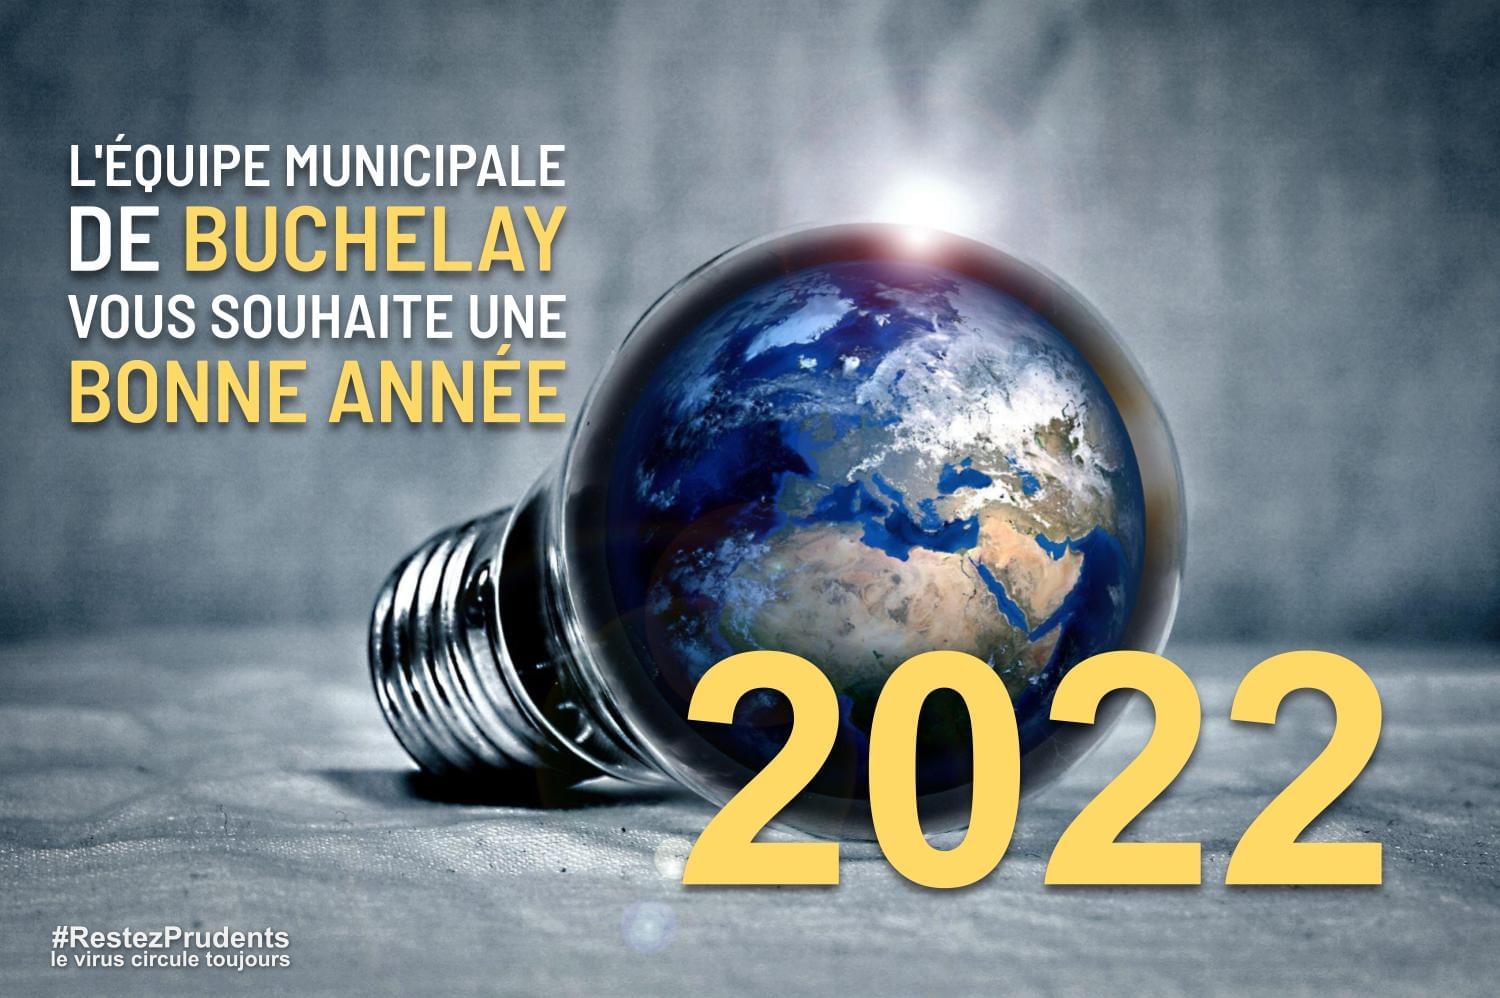 L’équipe municipale de Buchelay vous souhaite une bonne année 2022